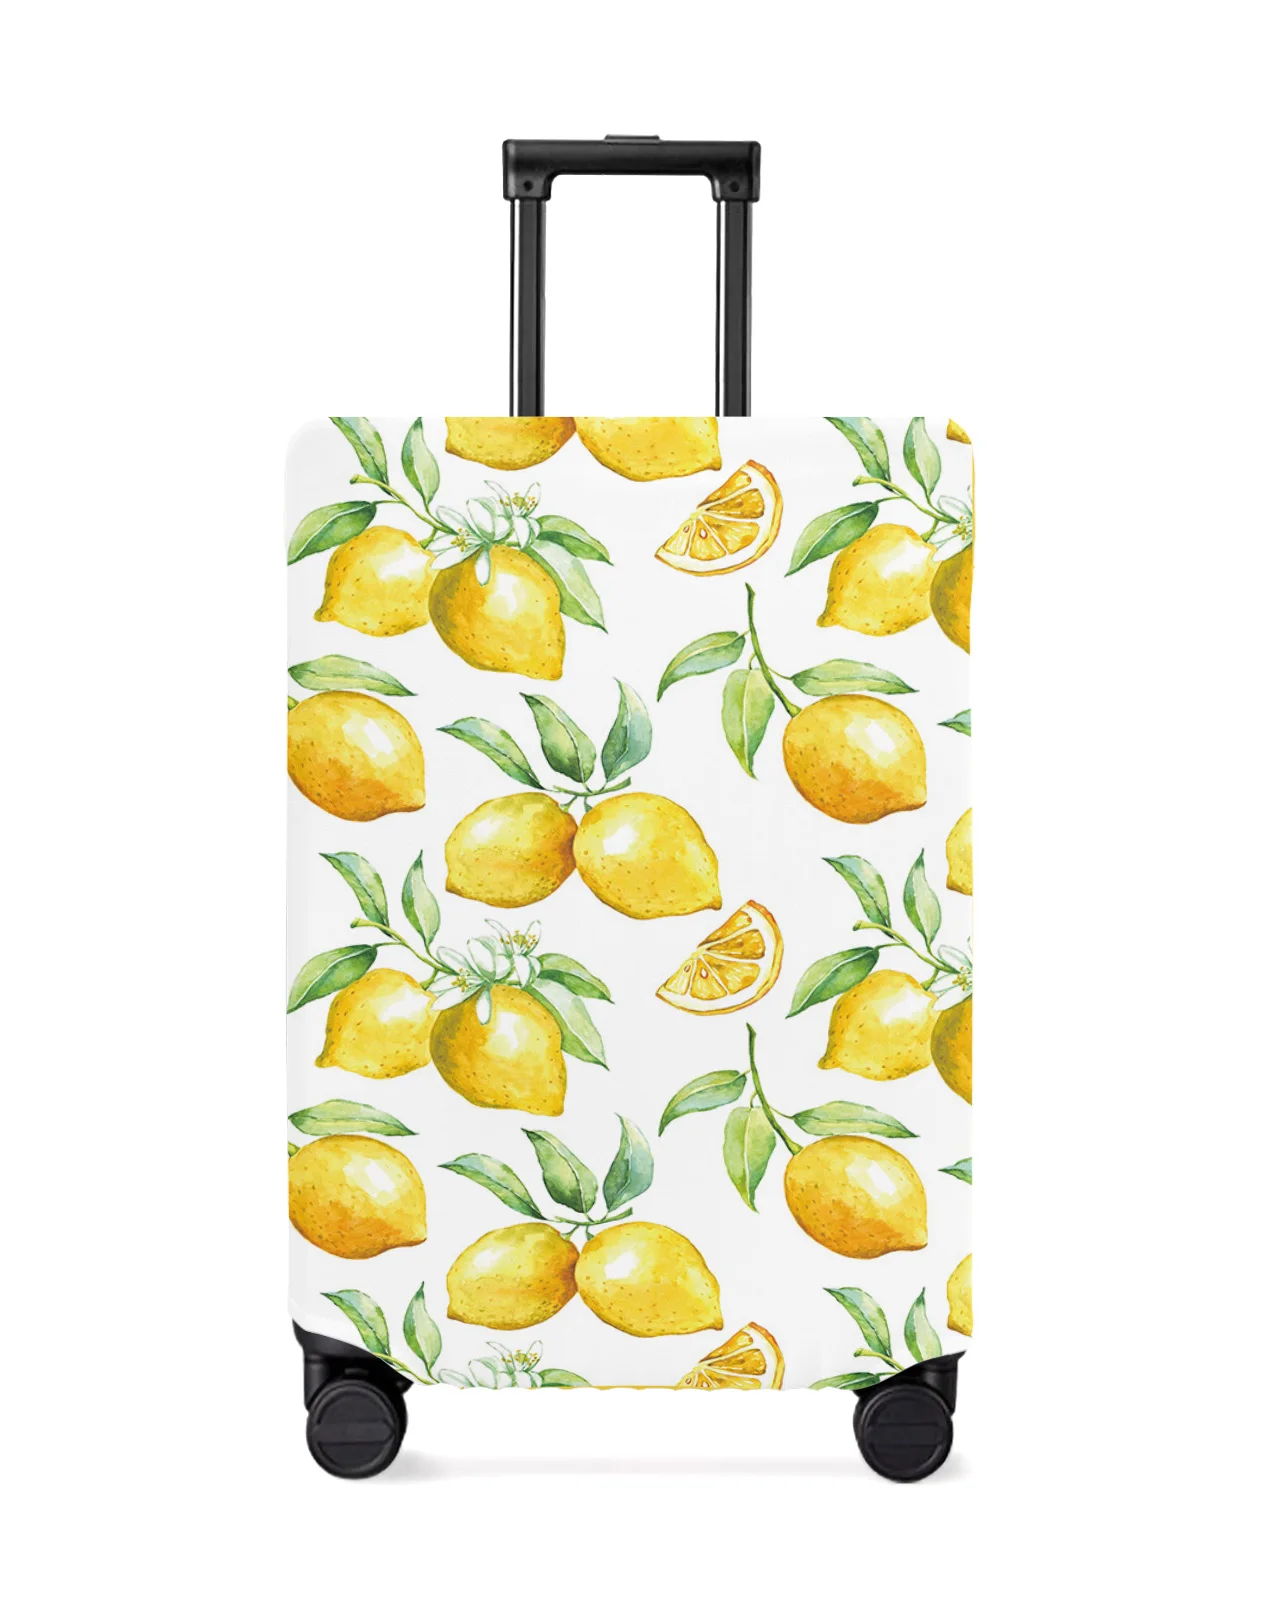 juste-de-protection-de-bagage-de-voyage-fruit-de-citron-d'interconnexion-accessoires-de-valise-etui-anti-poussiere-elastique-manchon-de-protection